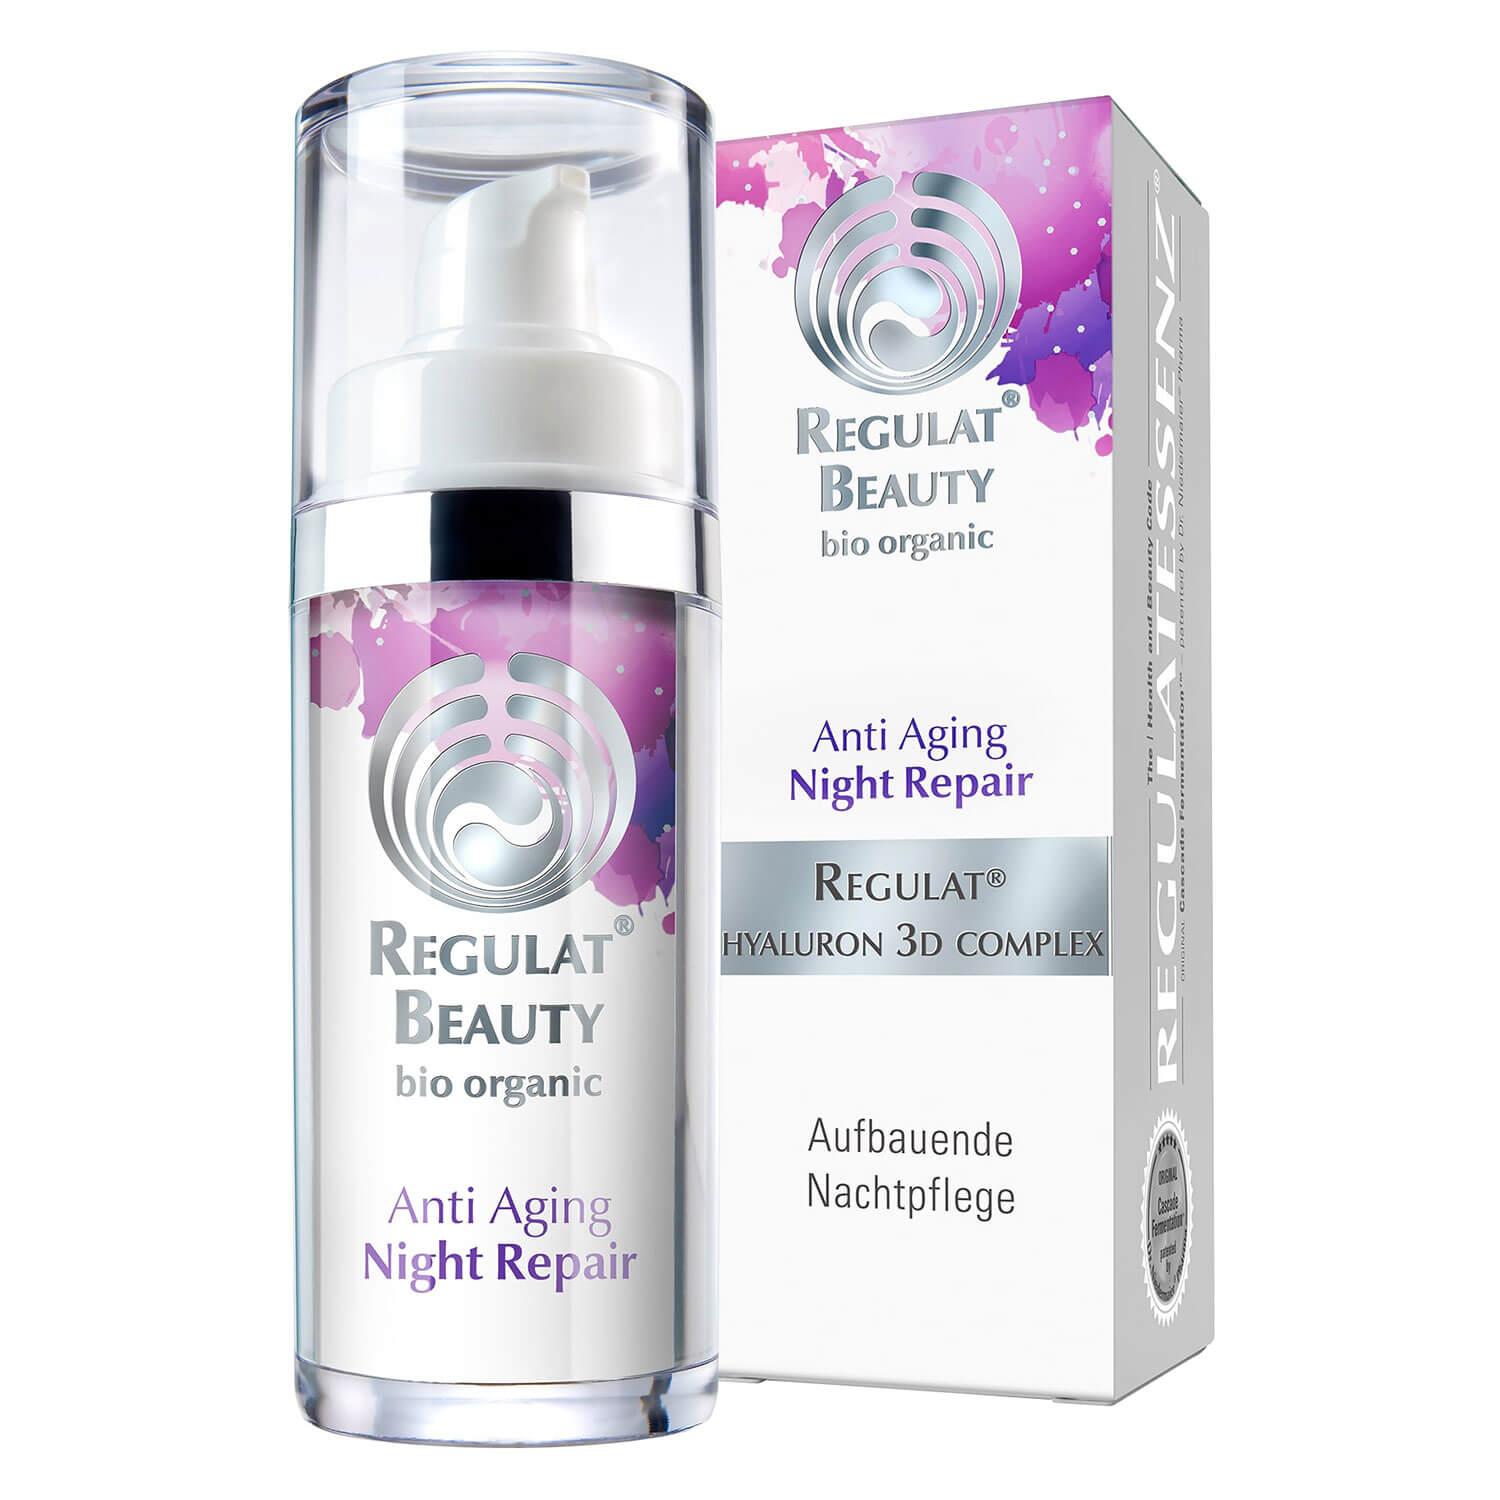 Regulat® Beauty - Anti Aging Night Repair